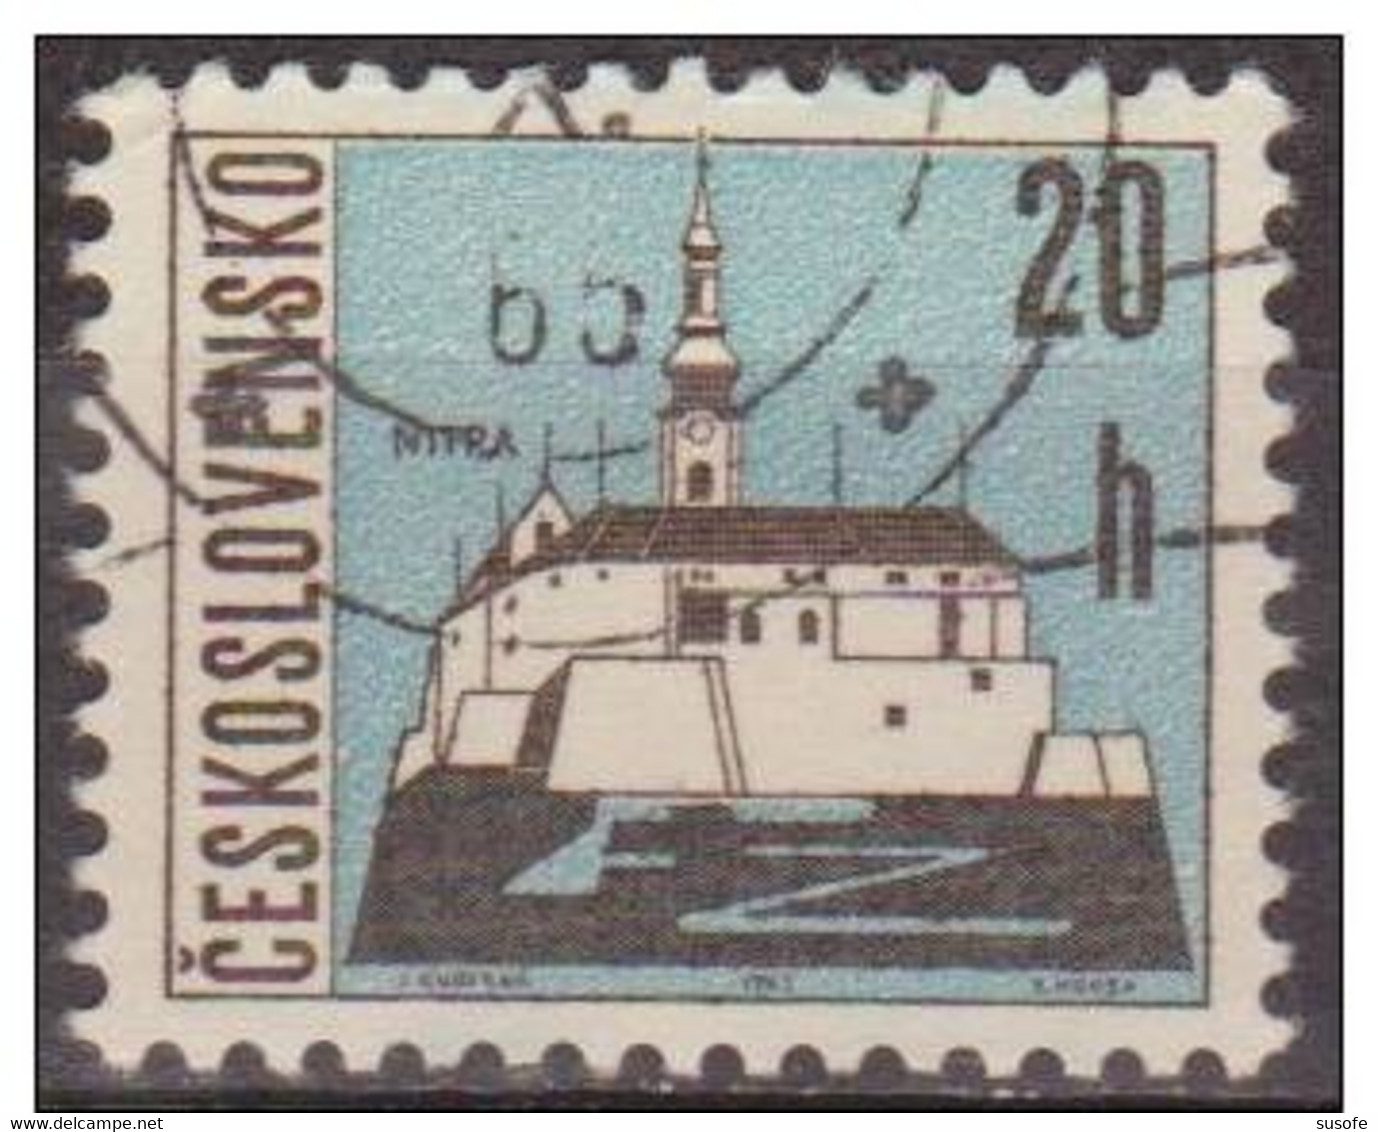 Checoslovaquia 1965 Scott 1347 Sello * Castillo Nitra Michel 1576x Yvert 1441 Czechoslovakia Stamps Timbre Tchécoslovaqu - Nuovi